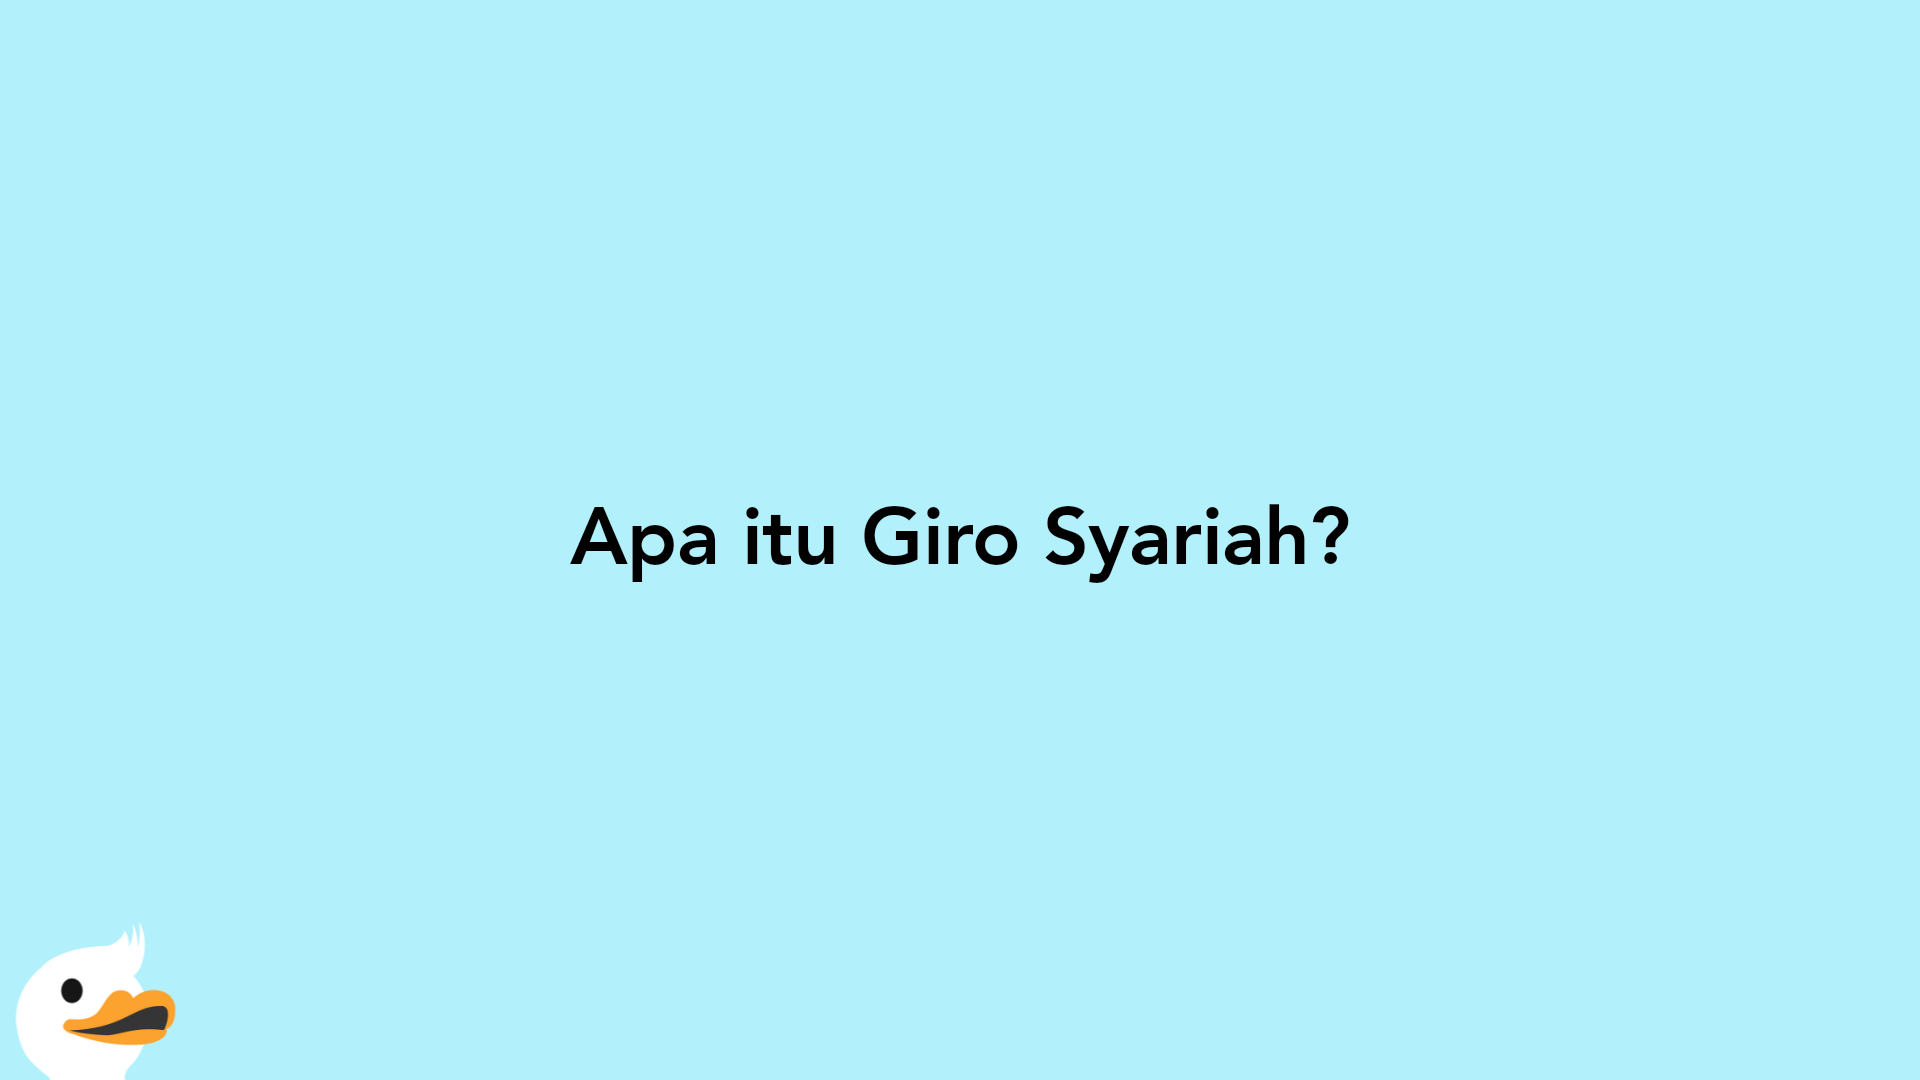 Apa itu Giro Syariah?